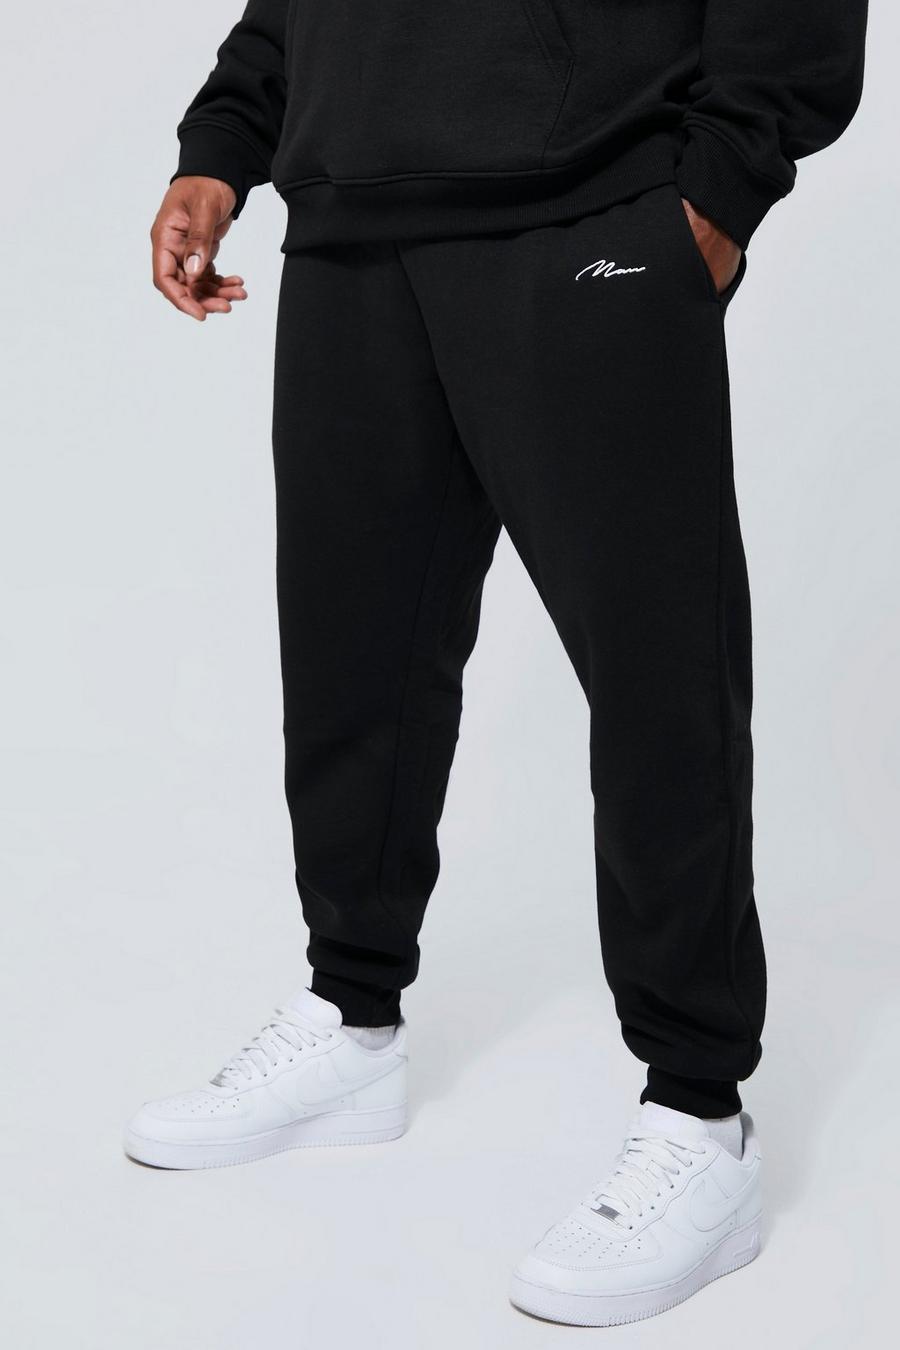 שחור negro מכנסי טרנינג בייסיק סקיני בסגנון דגמ'ח עם כיתוב Man, מידות גדולות